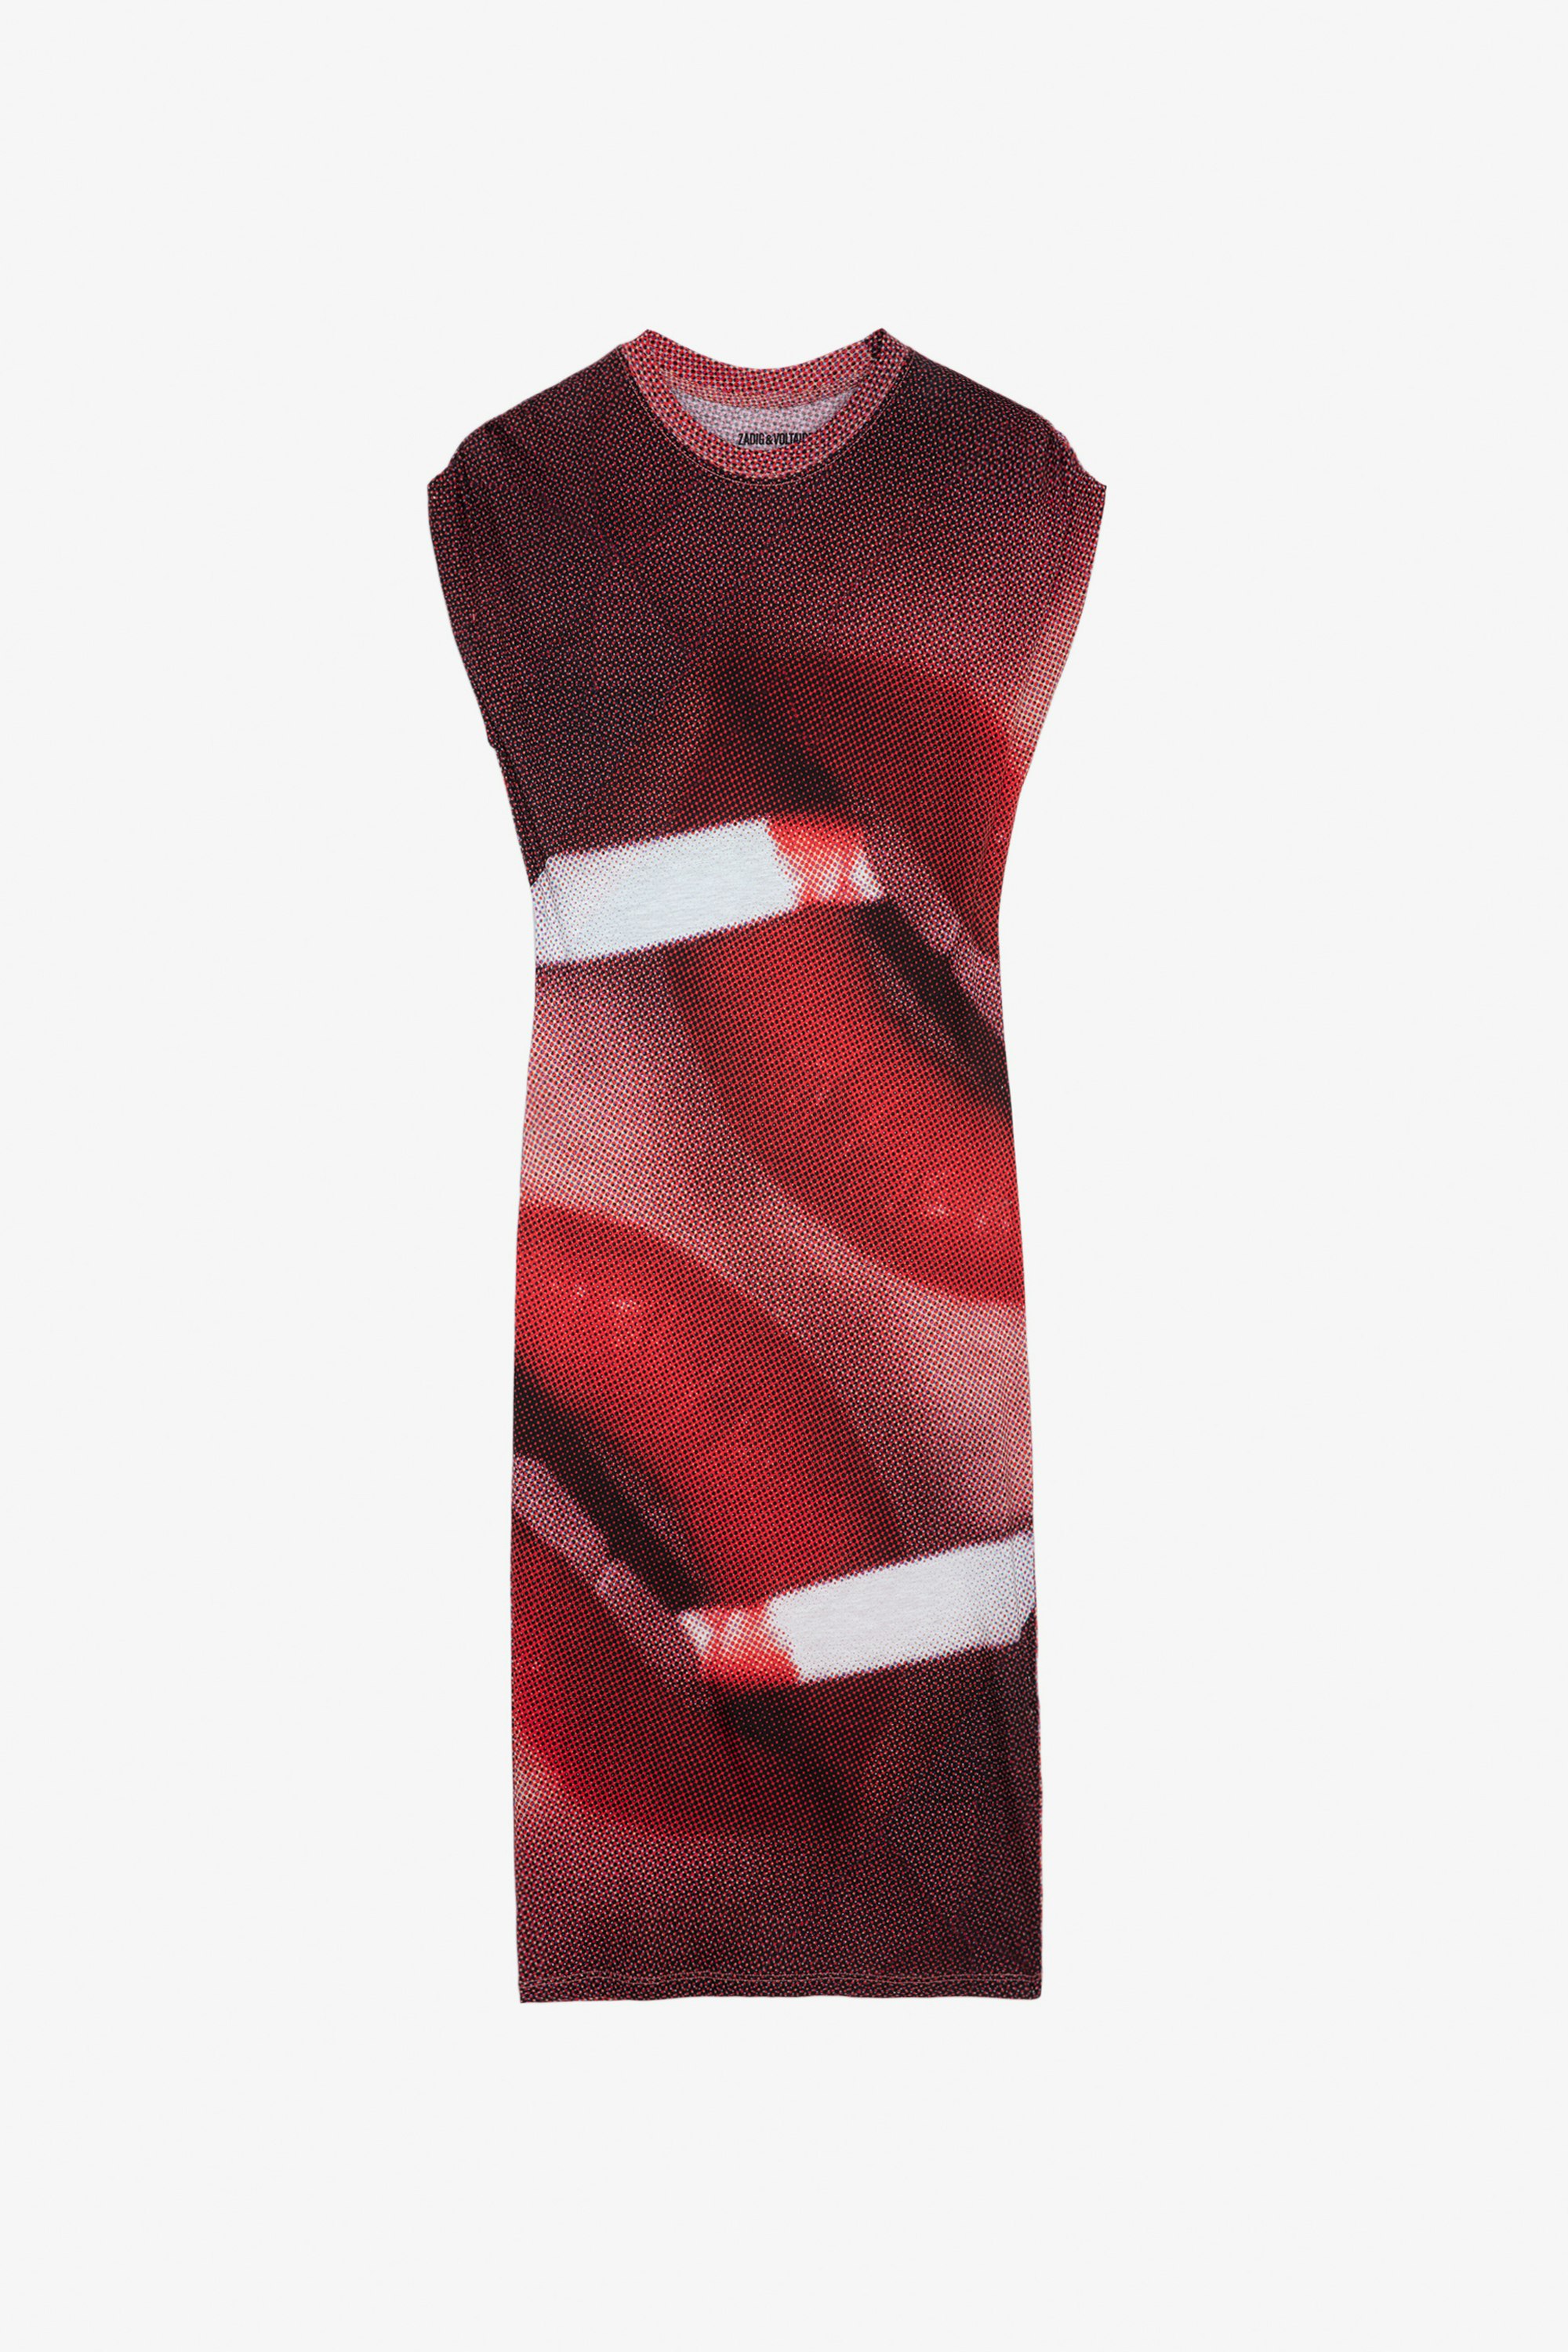 Kleid Adoni - Mehrfarbiges, langes Kleid mit kurzen, gerafften Ärmeln, „Double Lips XXL“-Print und Flügelmotiv.